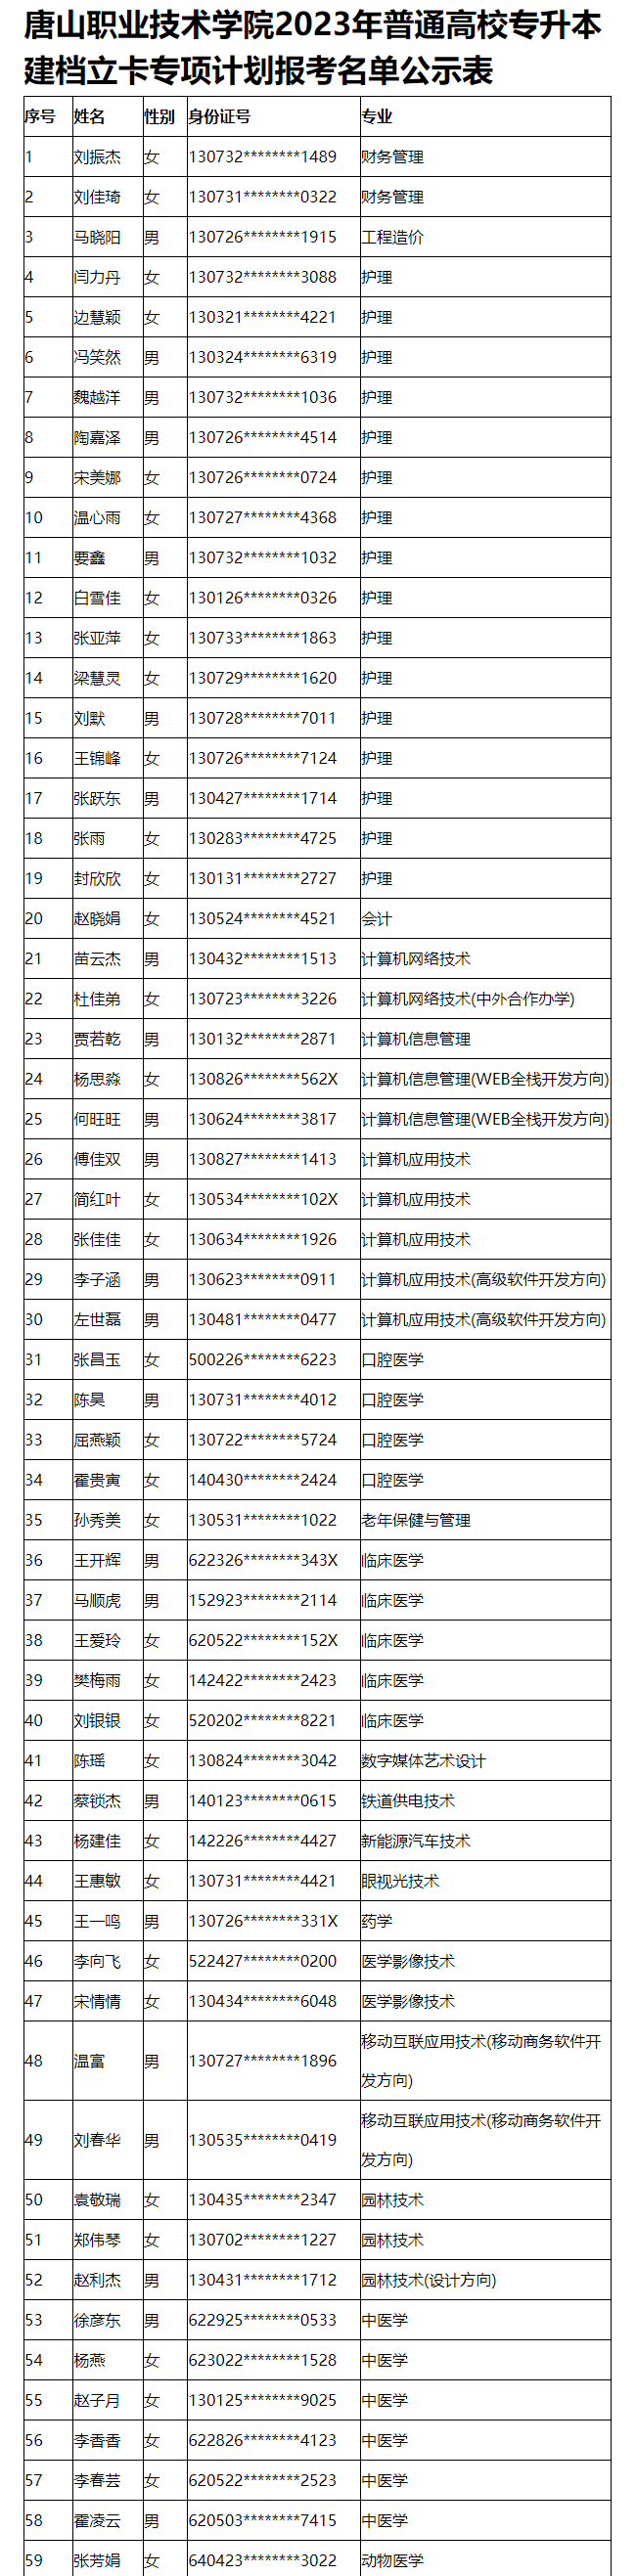 唐山职业技术学院2023年专升本建档立卡名单